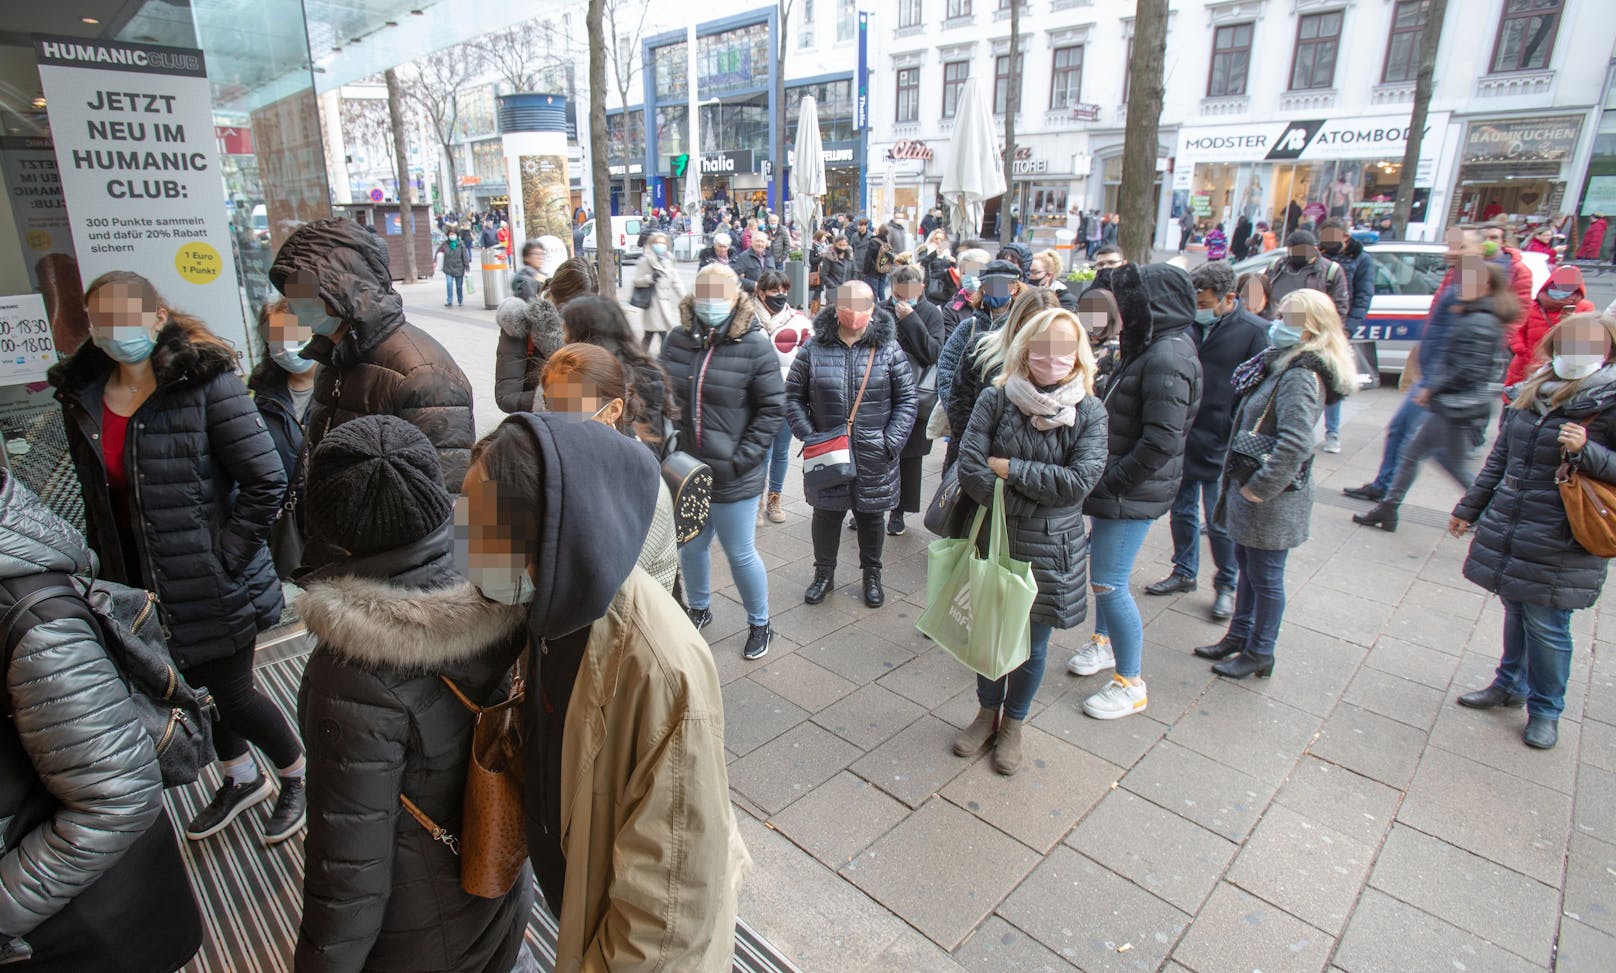 Shopping-Wahnsinn in Wien. Zu diesen Bildern sagen die Experten: "Sie zeigen, dass es Maßnahmen braucht."